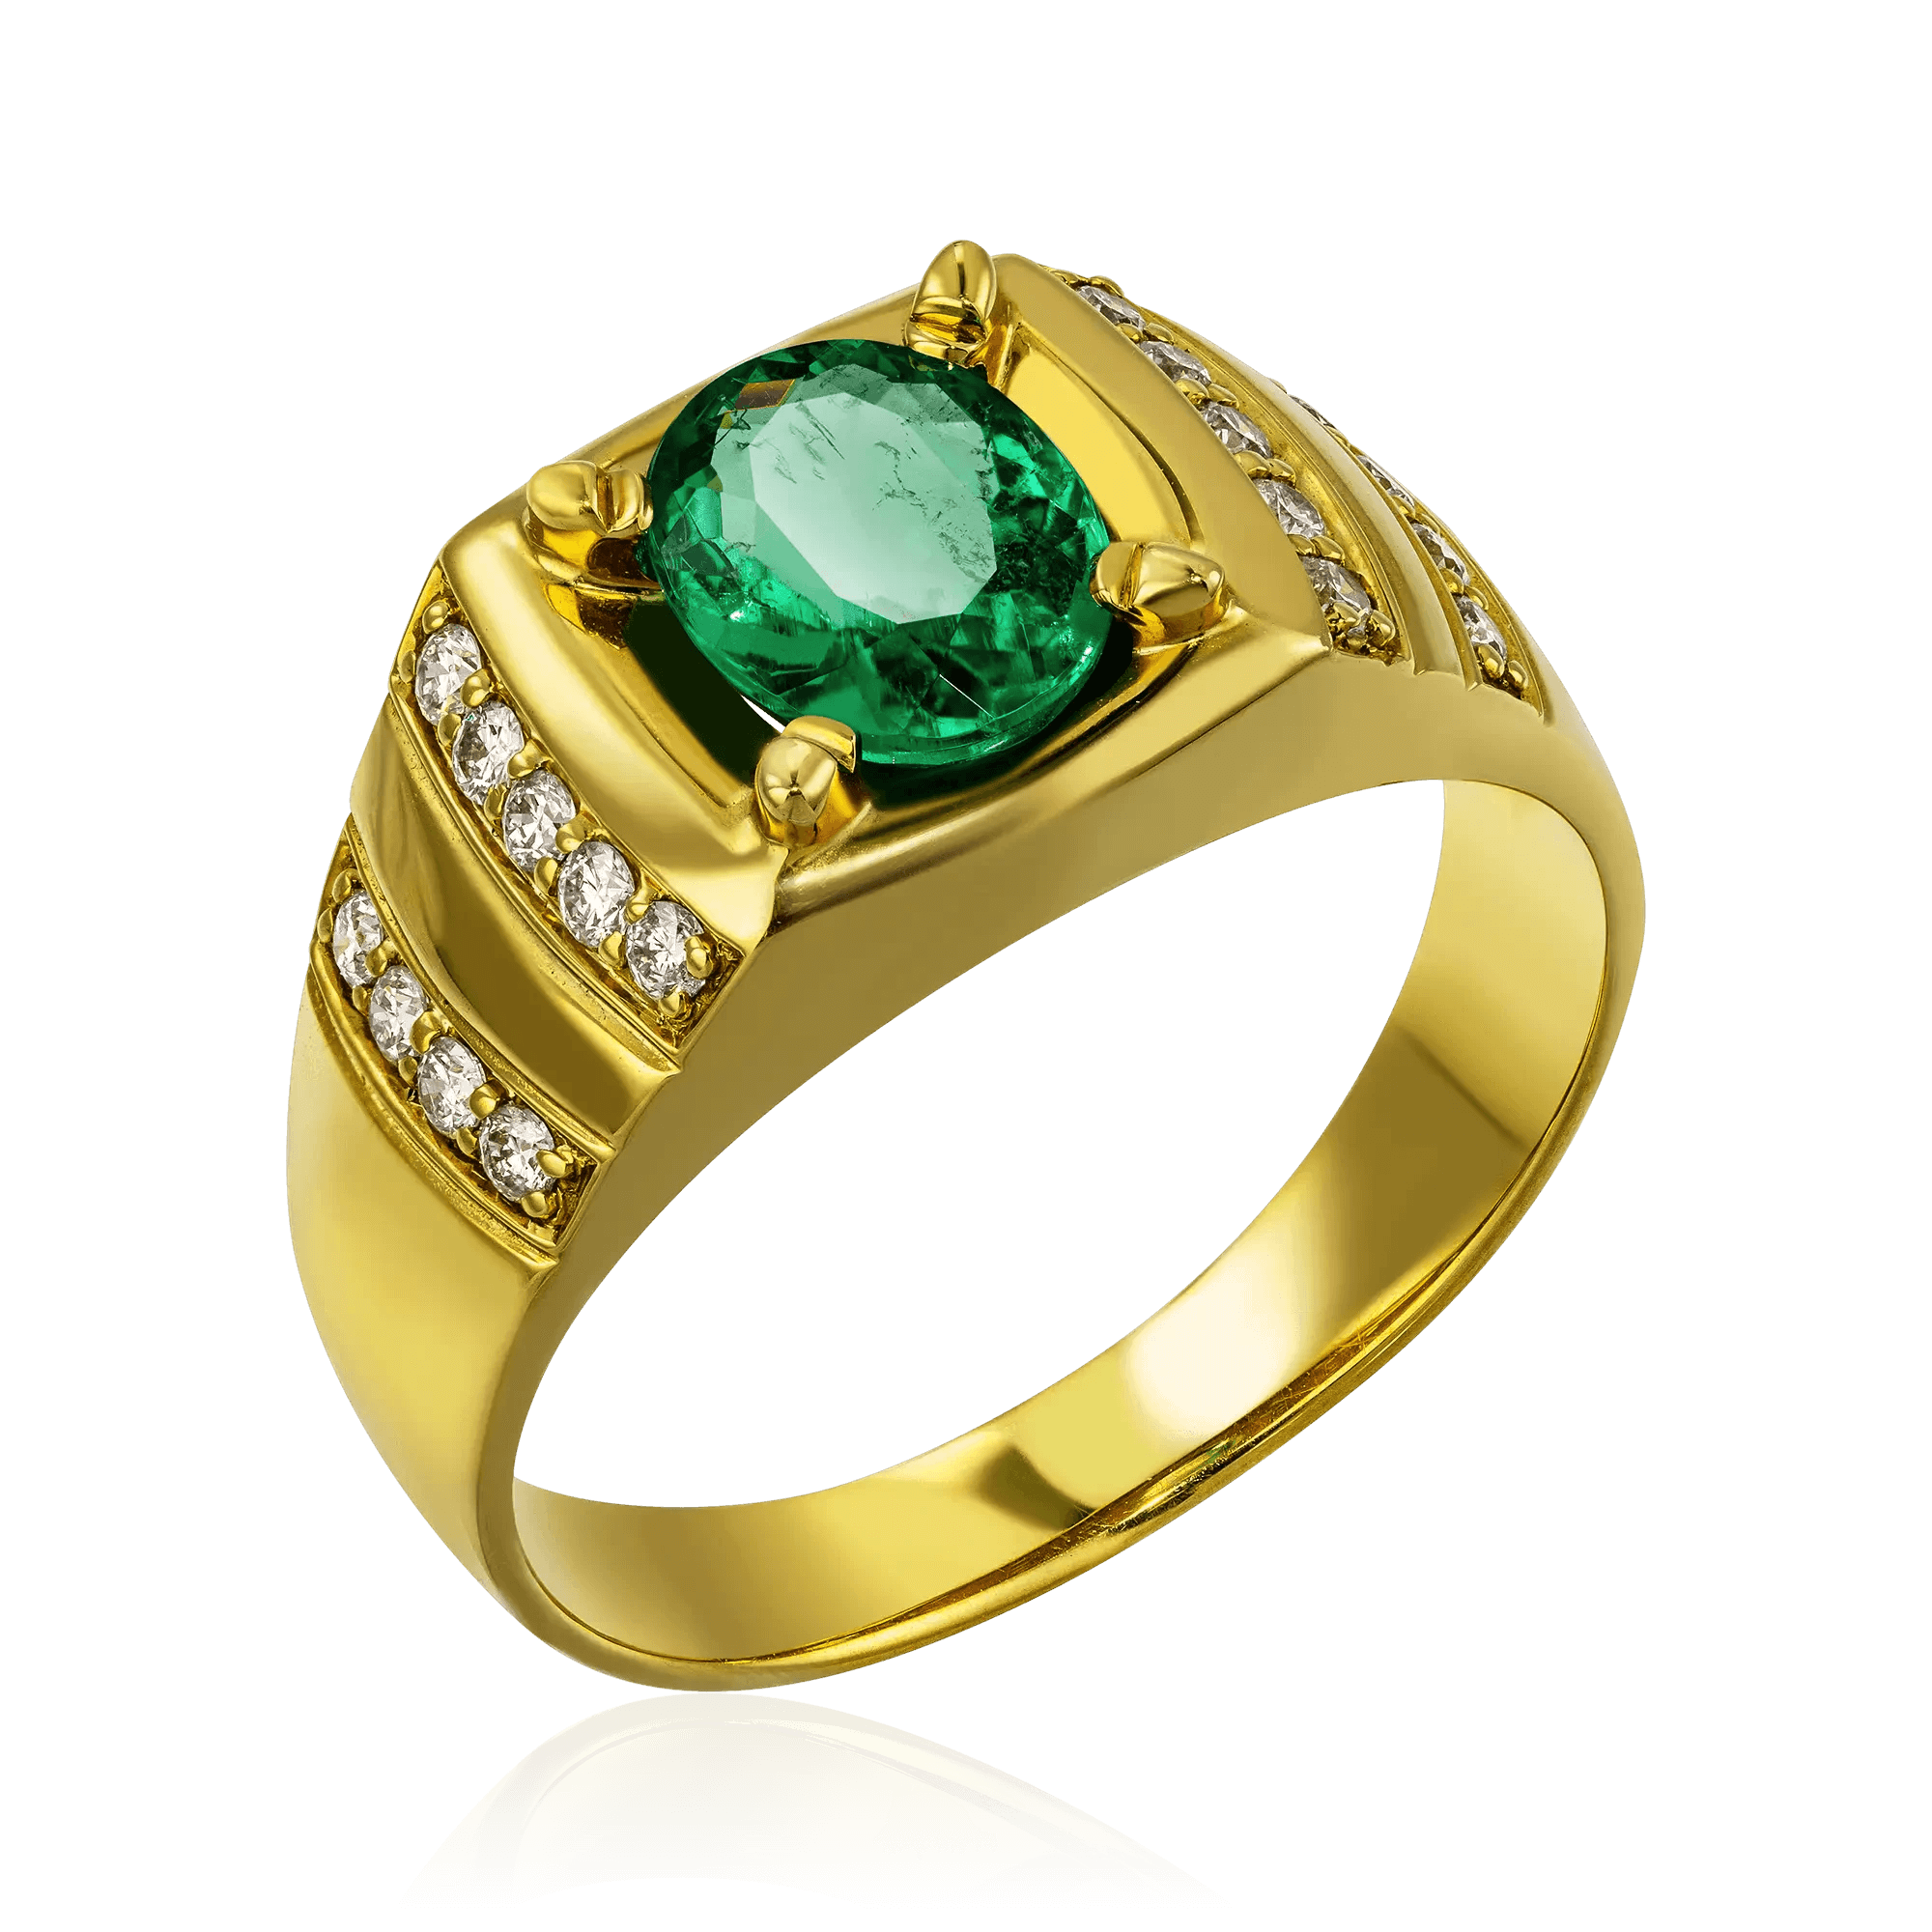 Мужское кольцо с изумрудом, бриллиантами из желтого золота 750 пробы, фото № 1